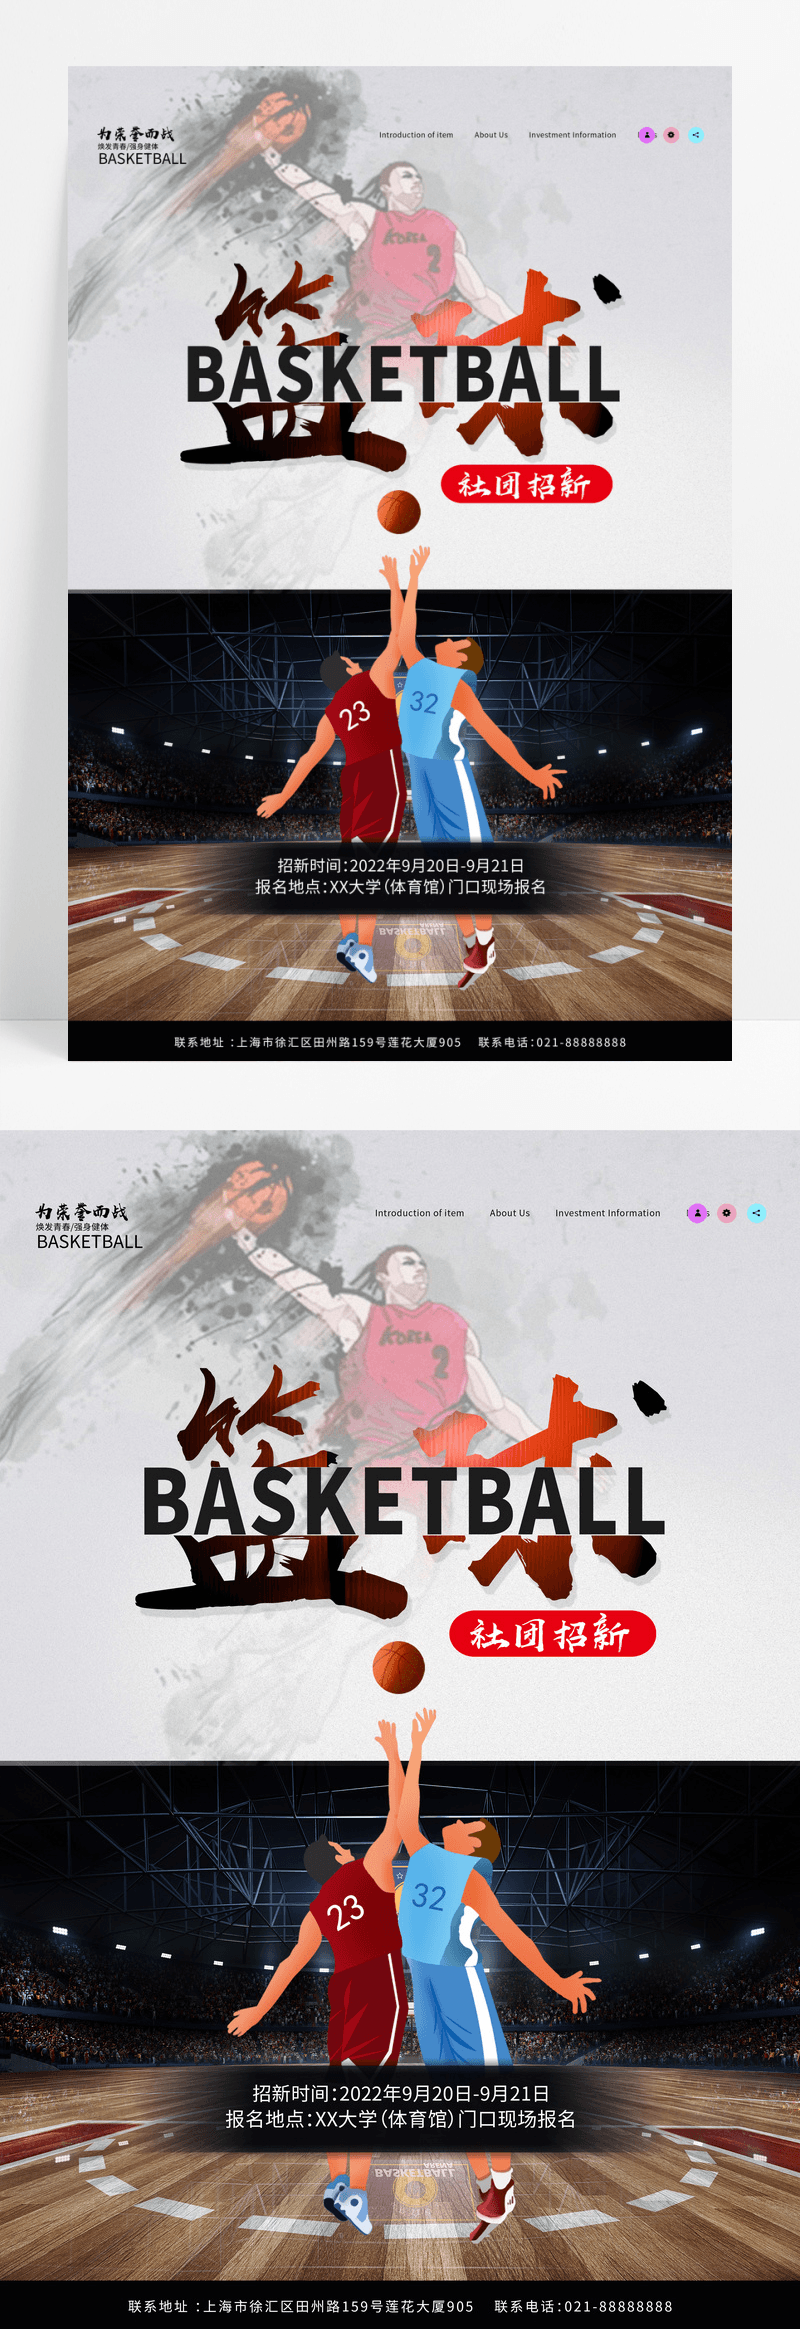 简约大学高校篮球社团招新宣传海报